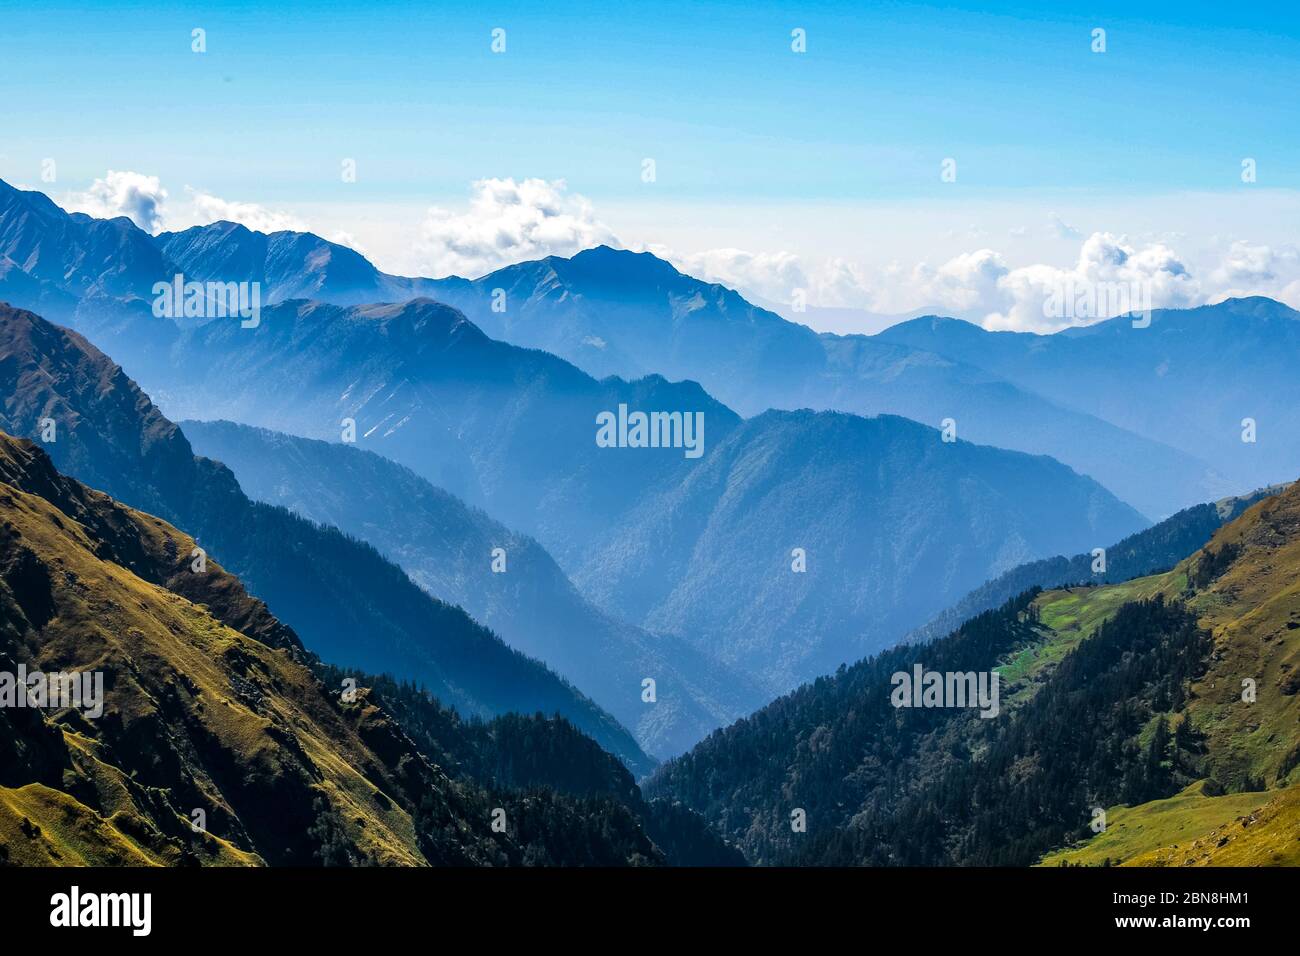 Montagne di Roopkund, Uttarakhand, India. Roopkund Trek è un famoso centro di trekking è visitato da migliaia di escursionisti. Montagne di neve. Foto Stock